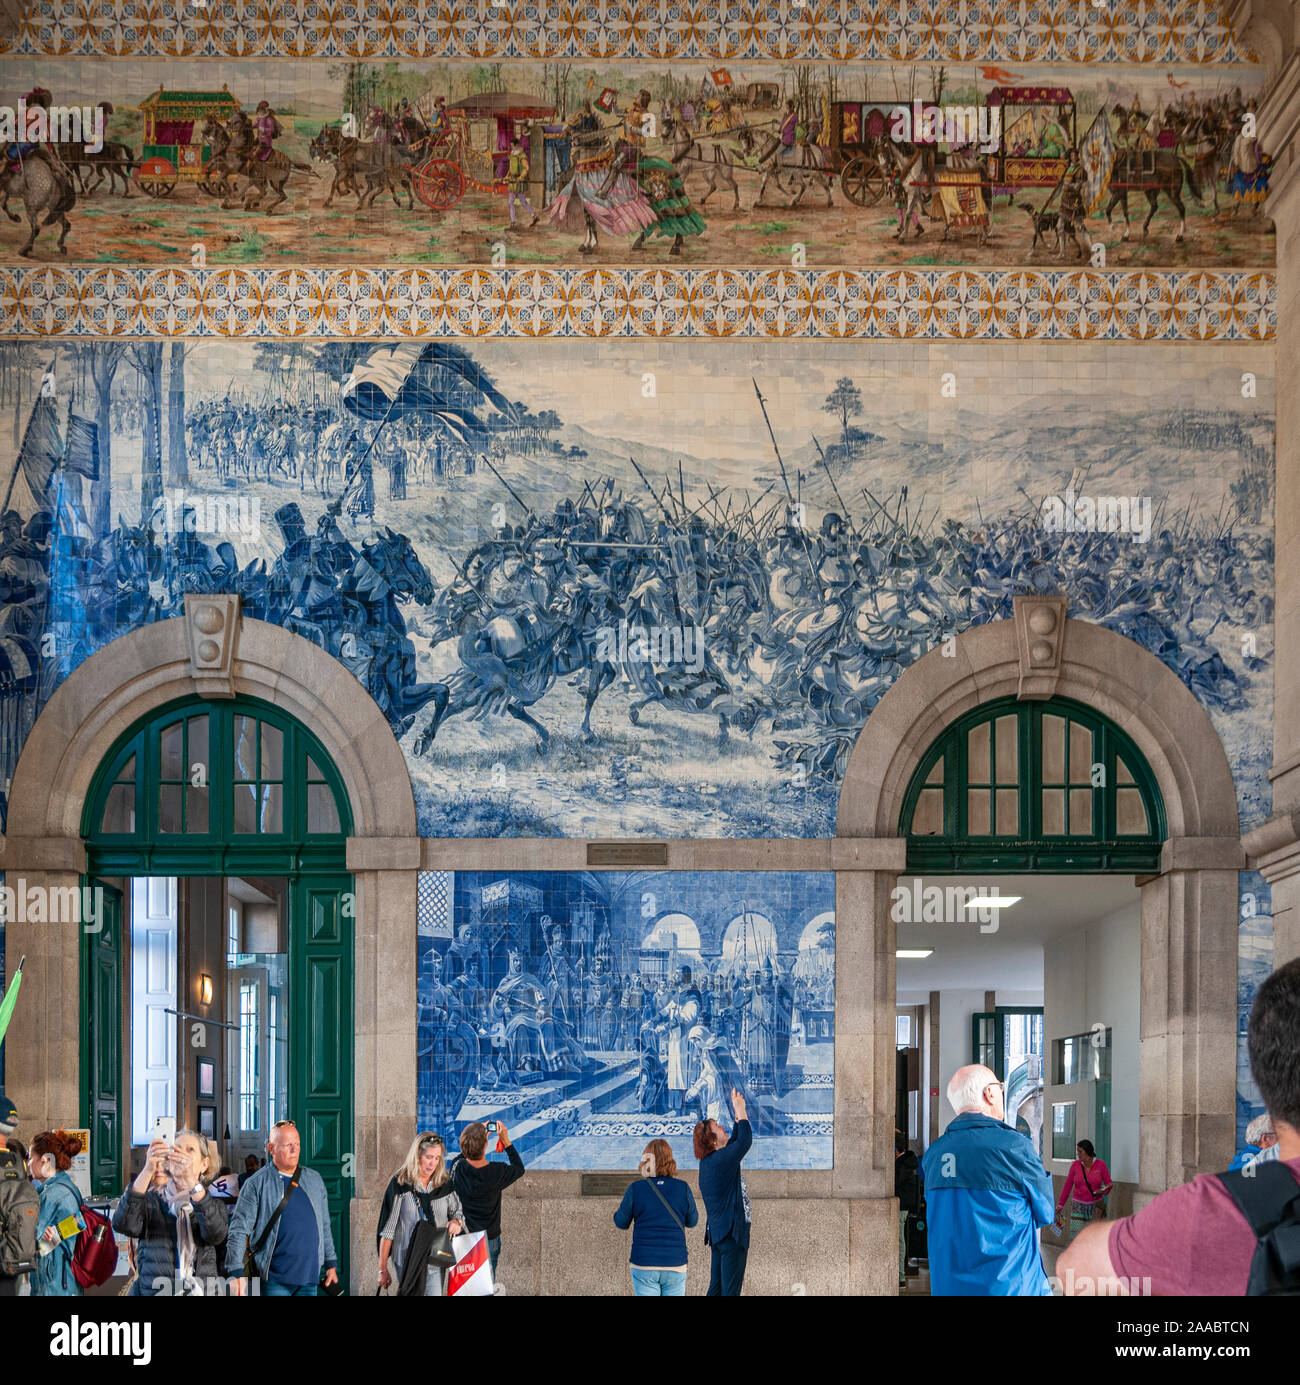 Bemalte Keramik Ziegelei (Azulejos) an den Innenwänden der Halle von Sao Bento Bahnhof in Porto, Portugal Stockfoto